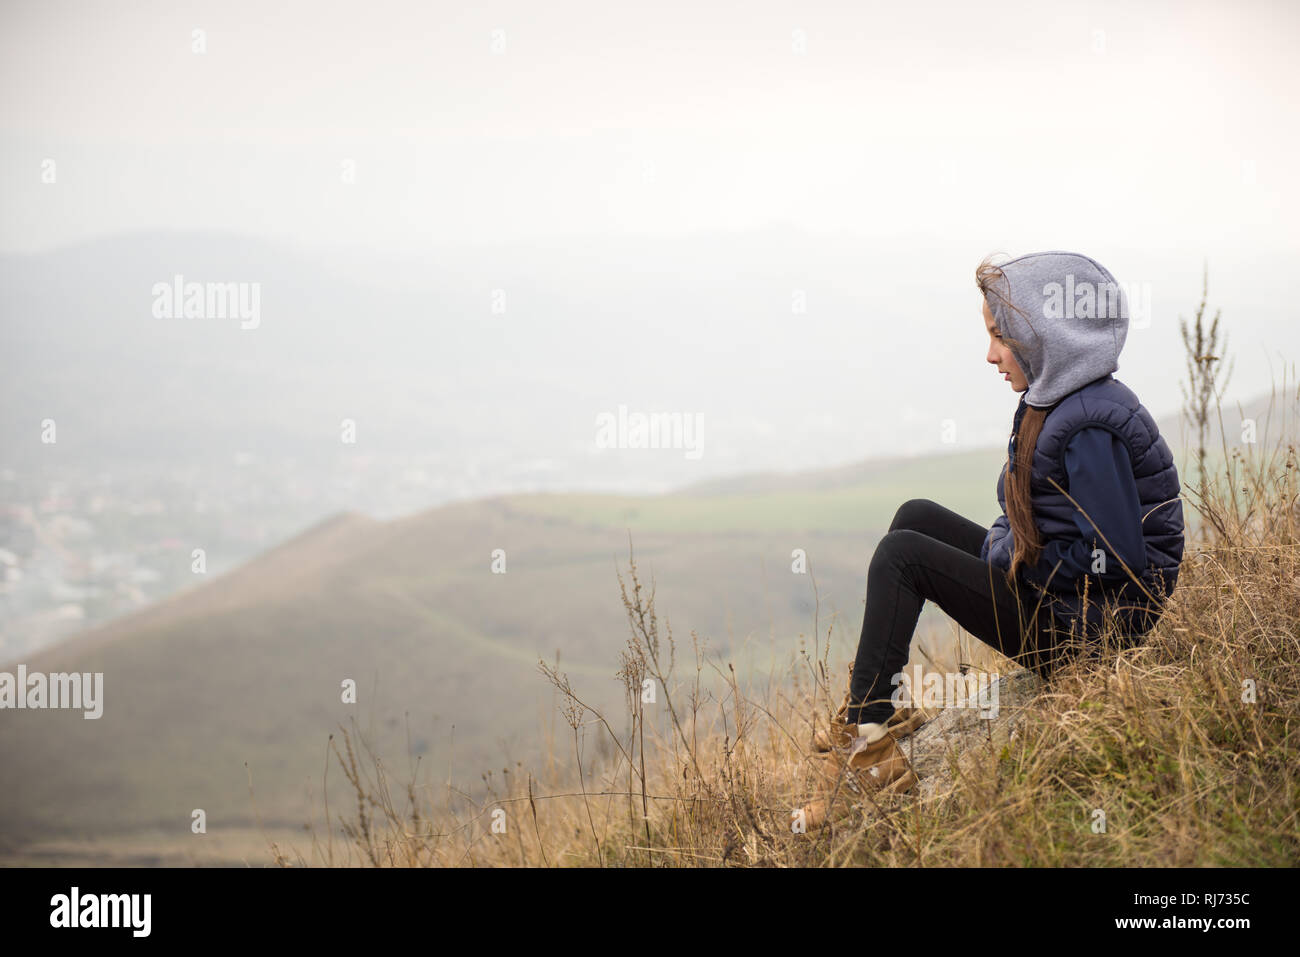 Aktiv gesund kleines Mädchen in sleveless Jacke und Kapuze am Berg beim Wandern Stockfoto